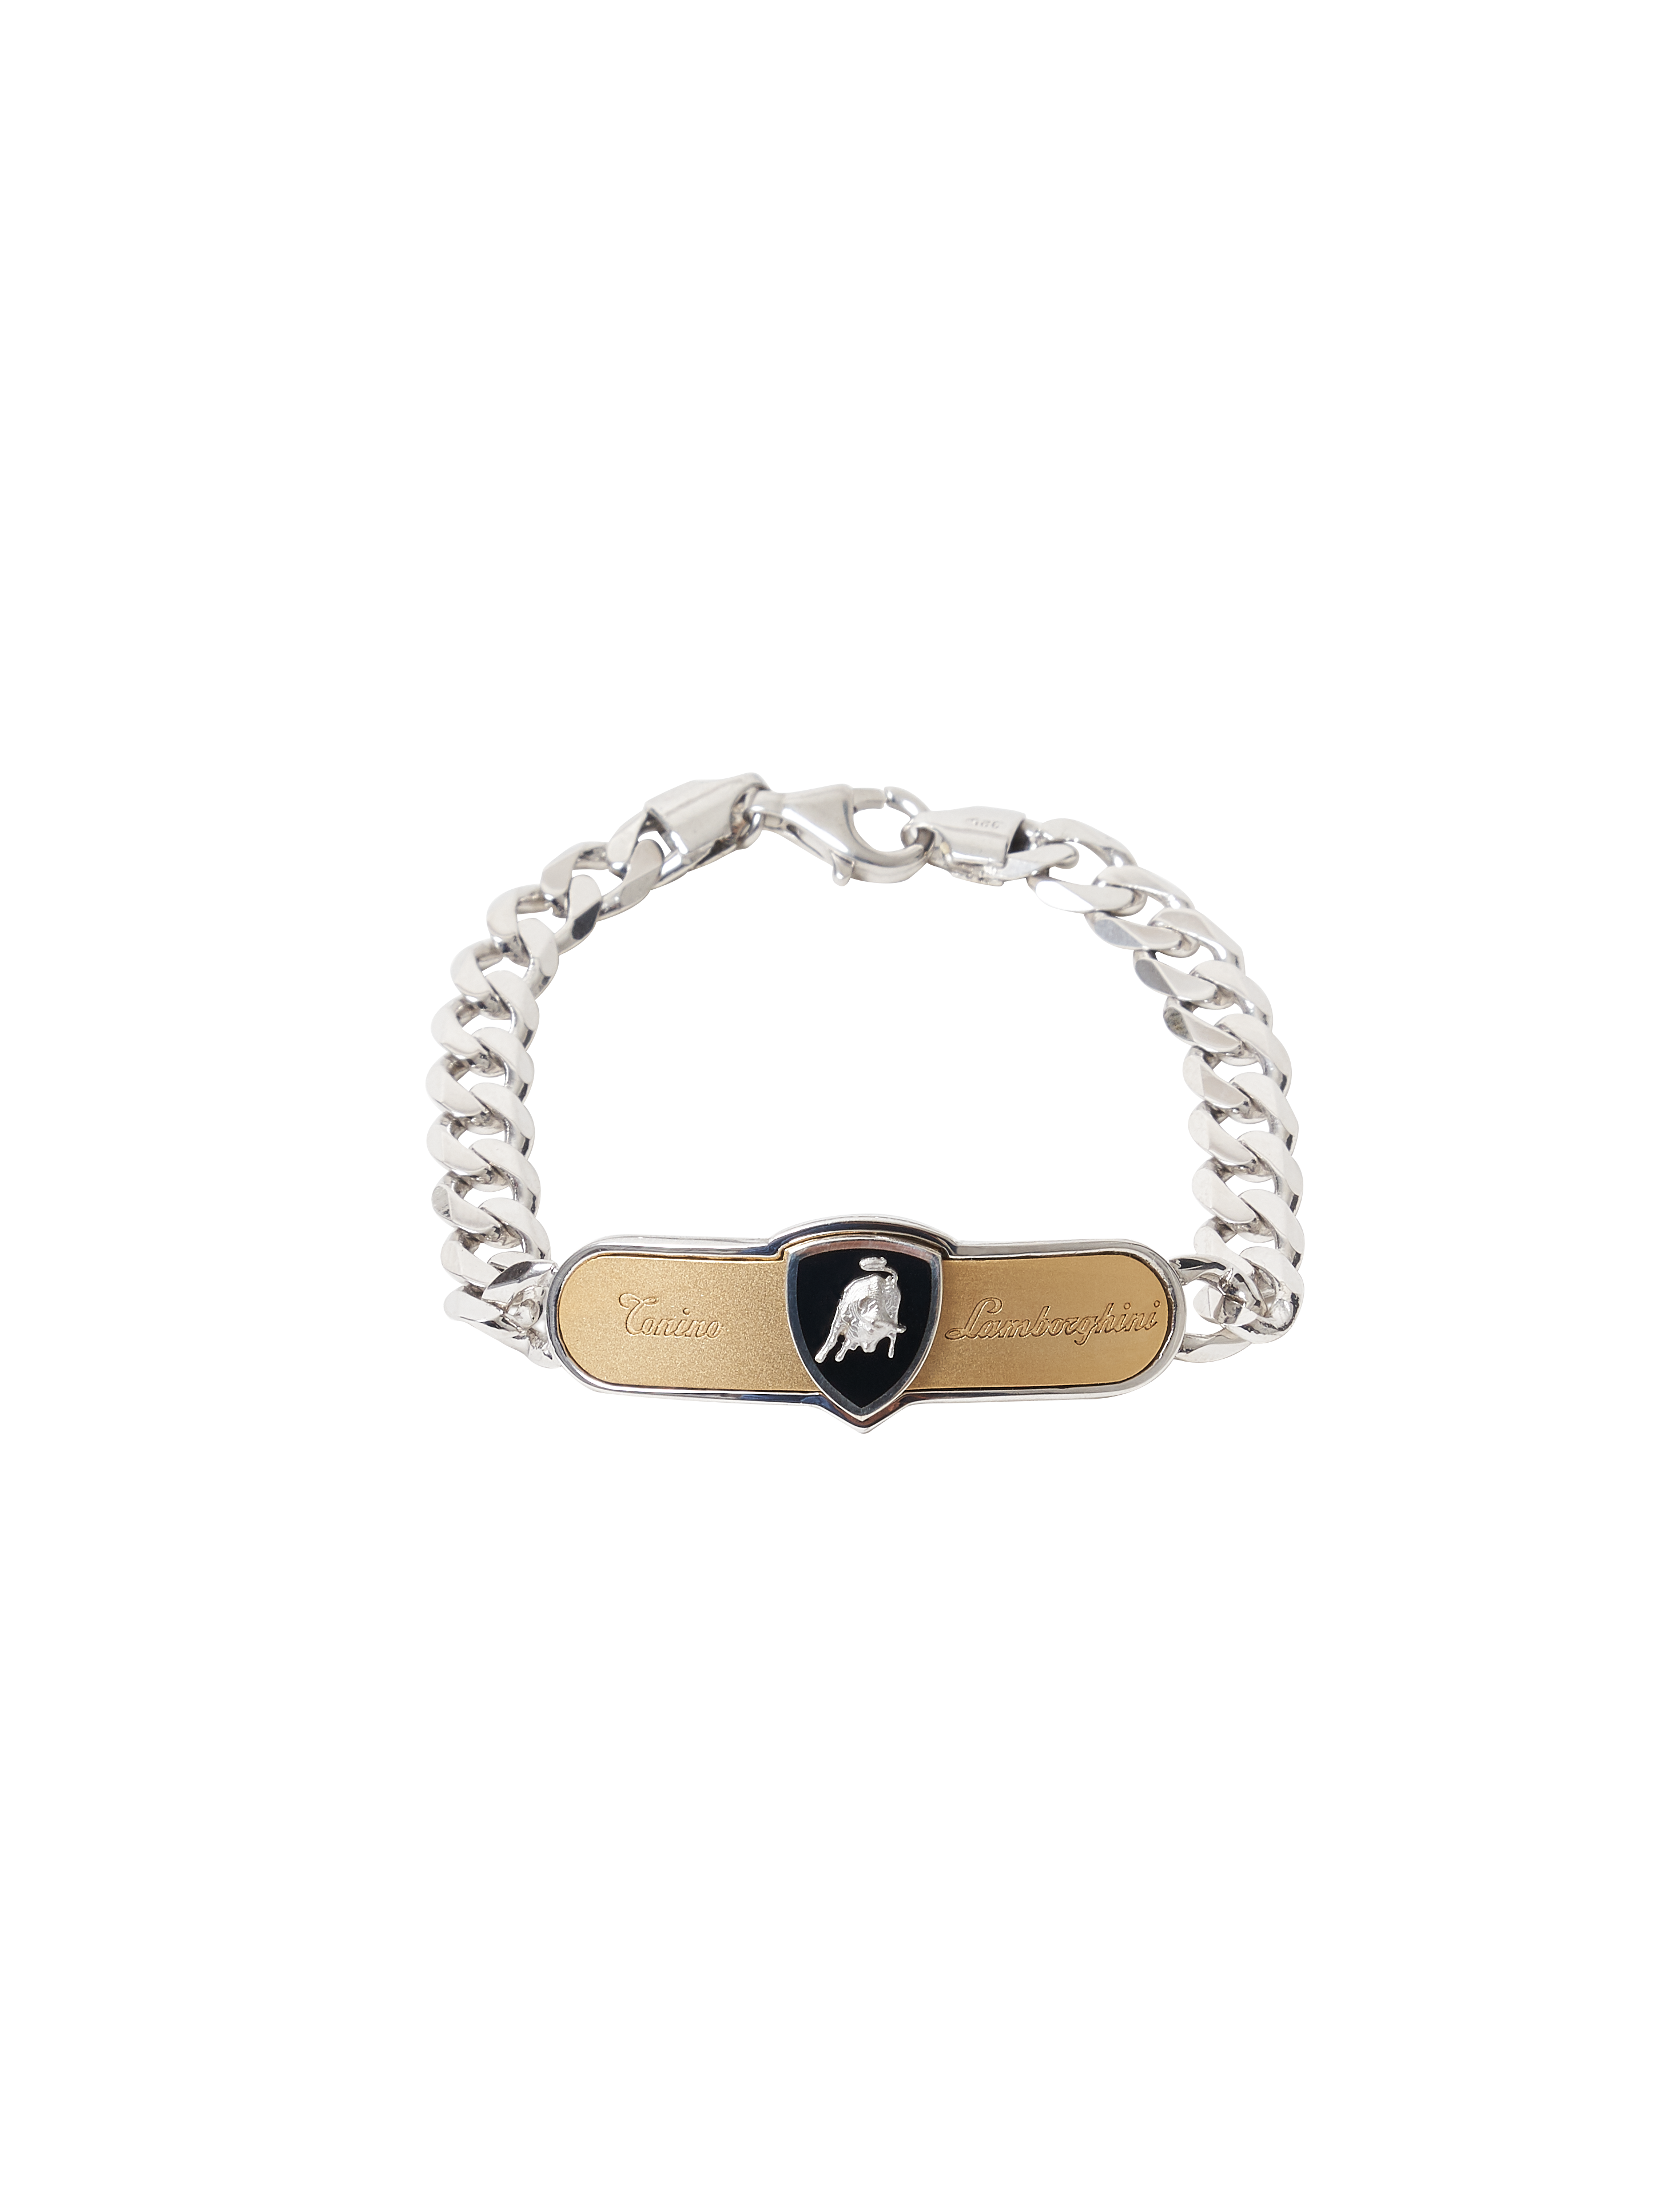 Curb Chain Bracelet - 21 cm